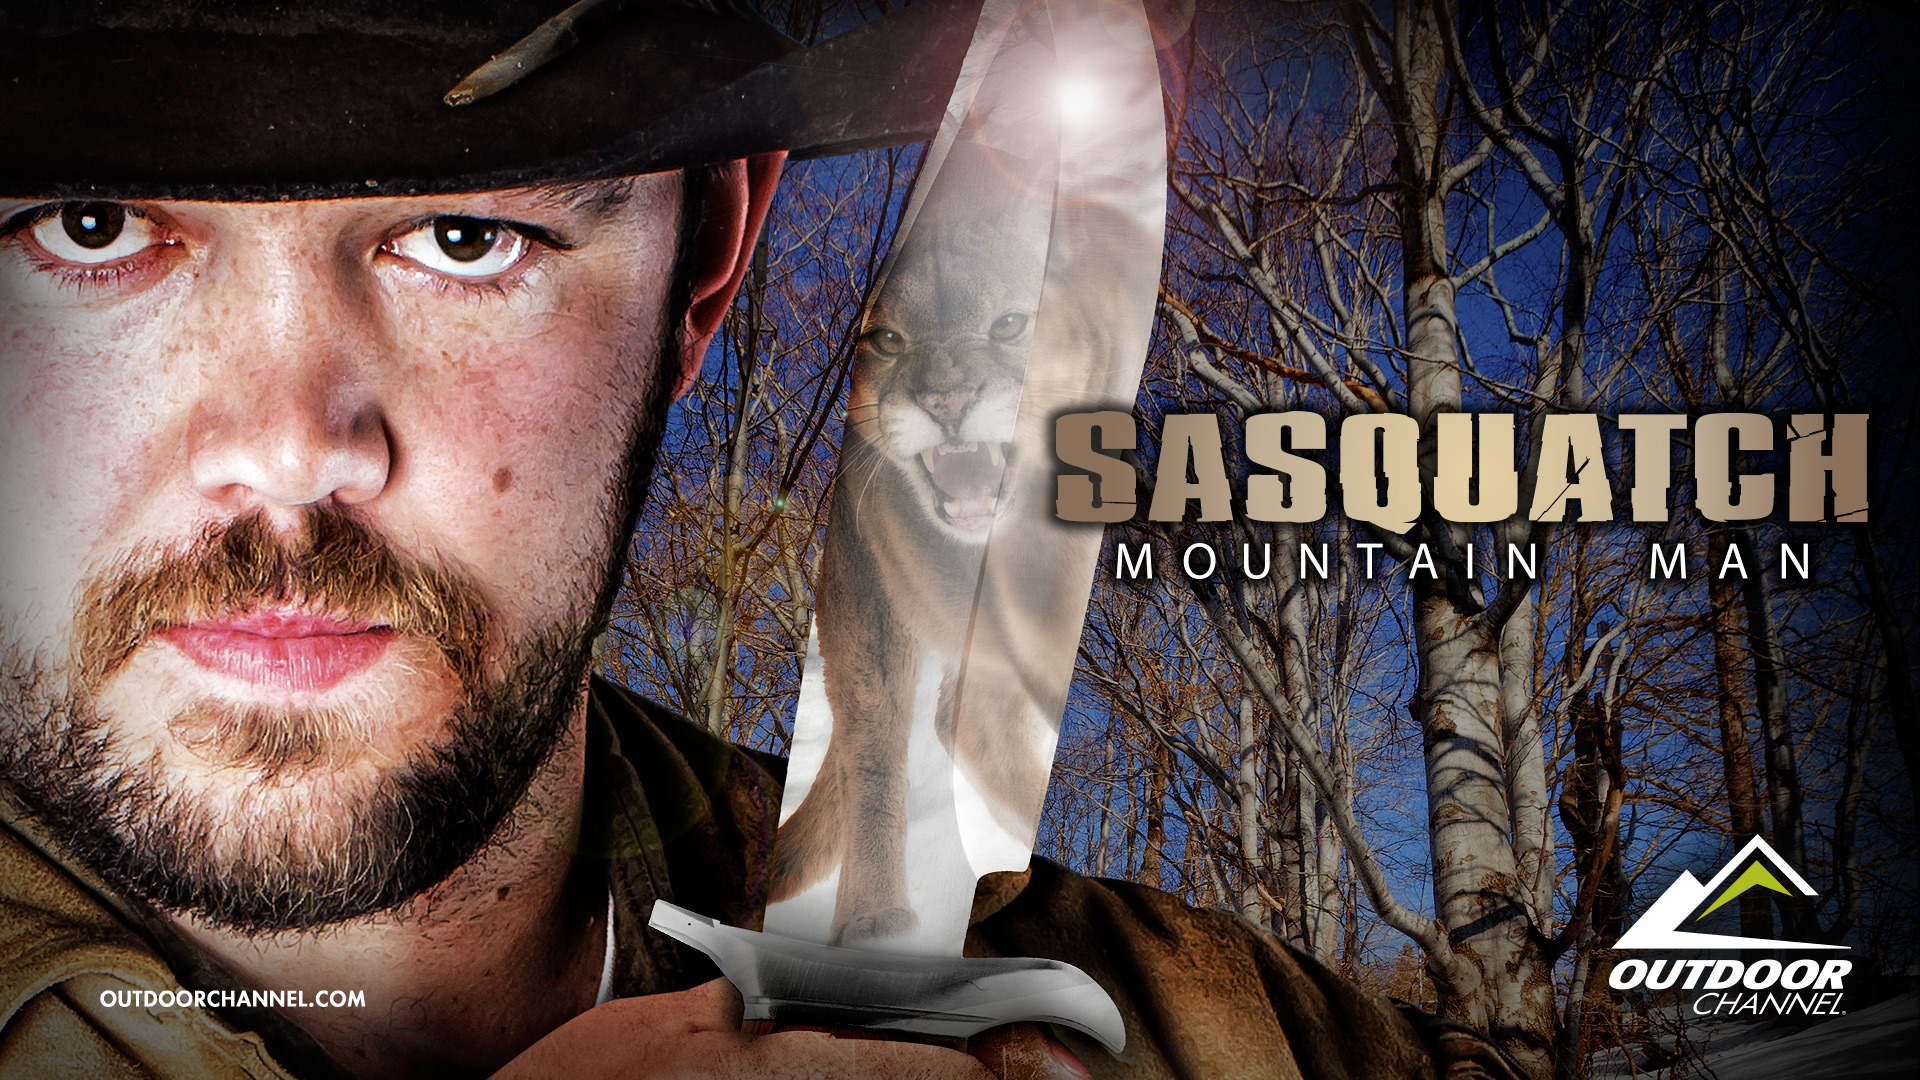 Show Sasquatch Mountain Man